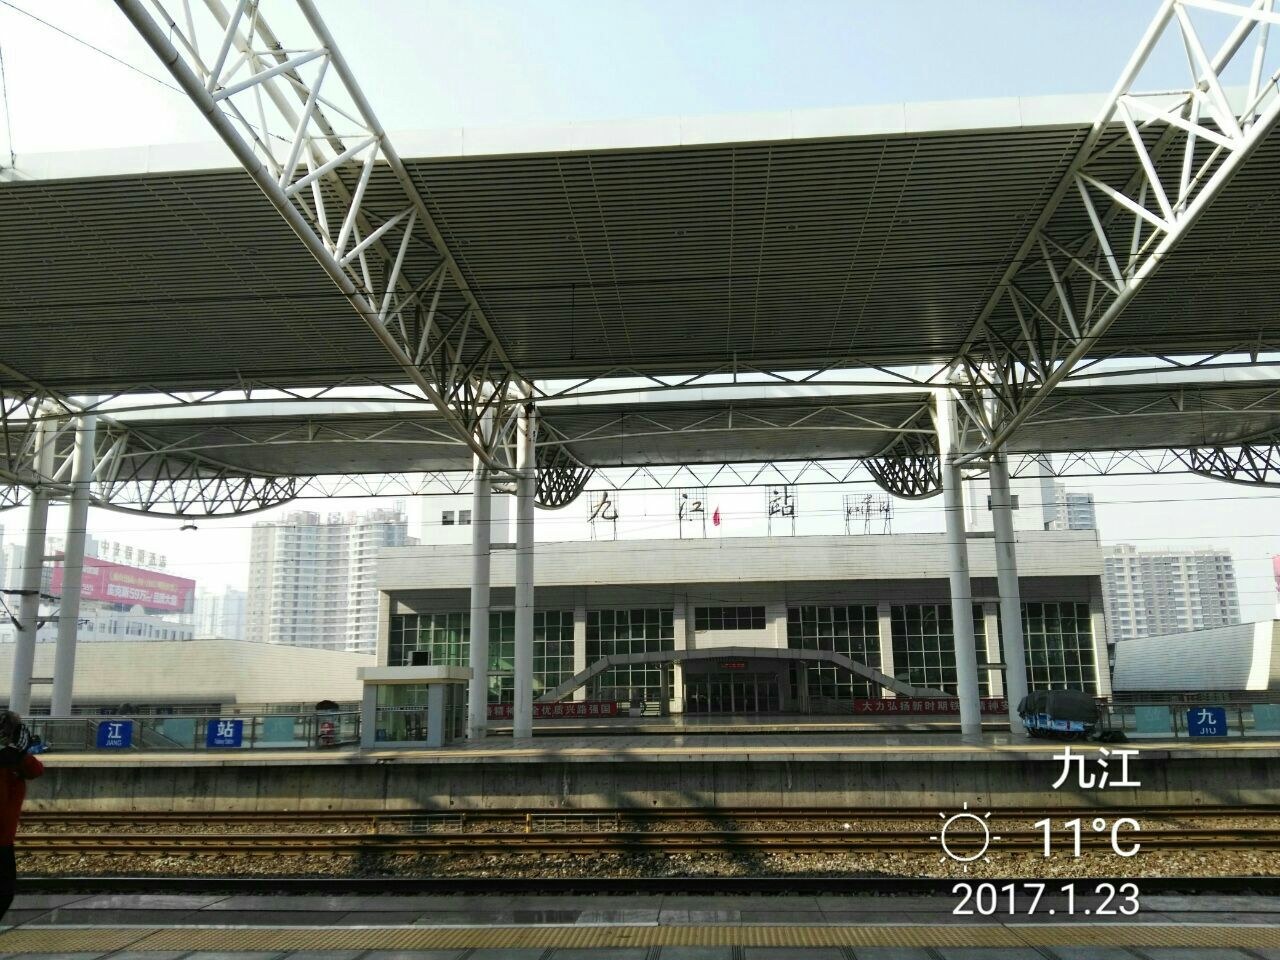 庐山火车站图片大全图片